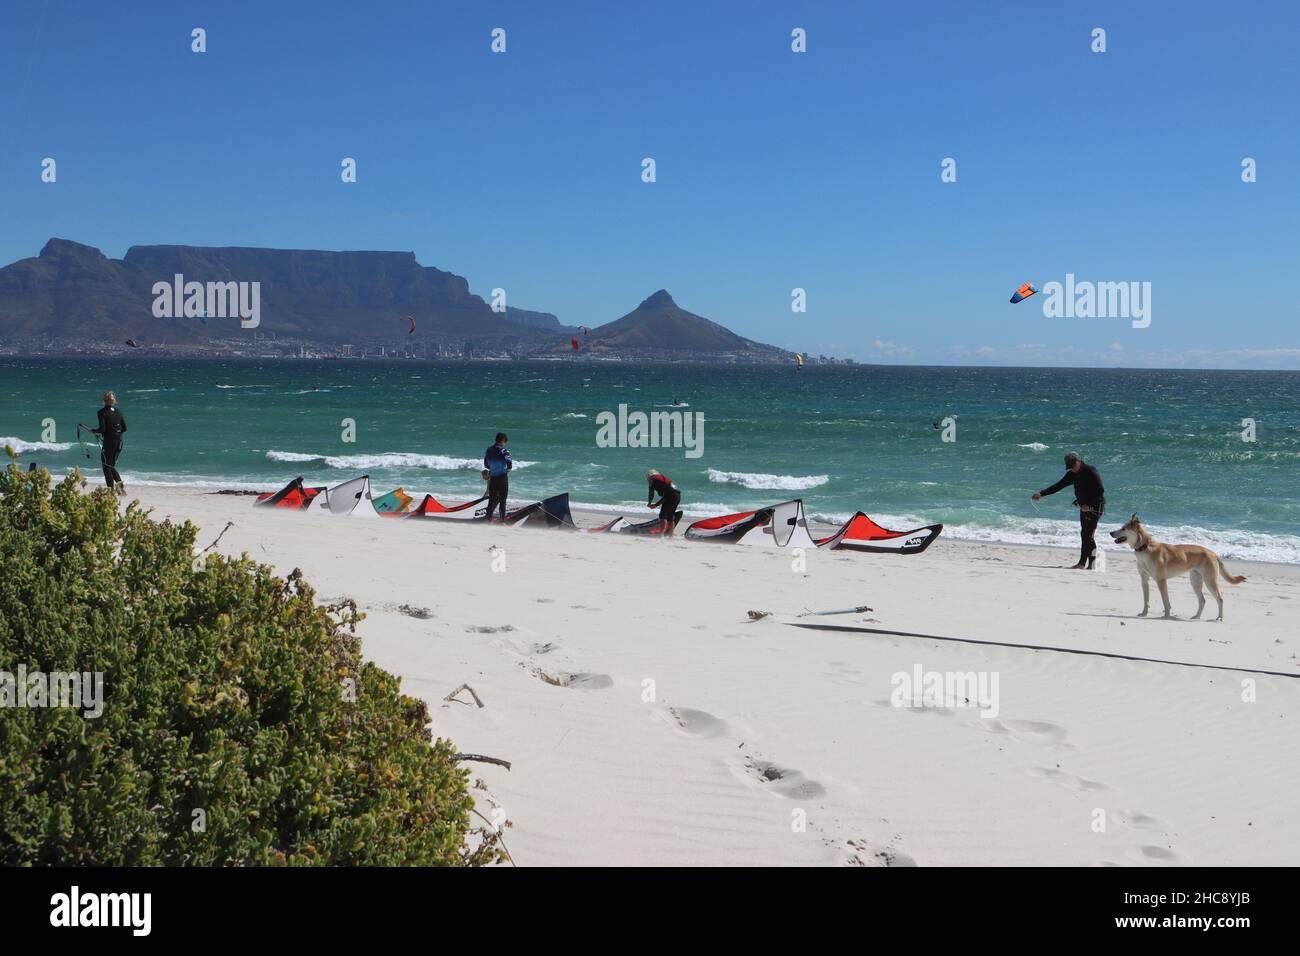 Montagne de table et surfeurs profitant du vent et de la mer agitée à Blouberg Beach, Afrique du Sud Banque D'Images